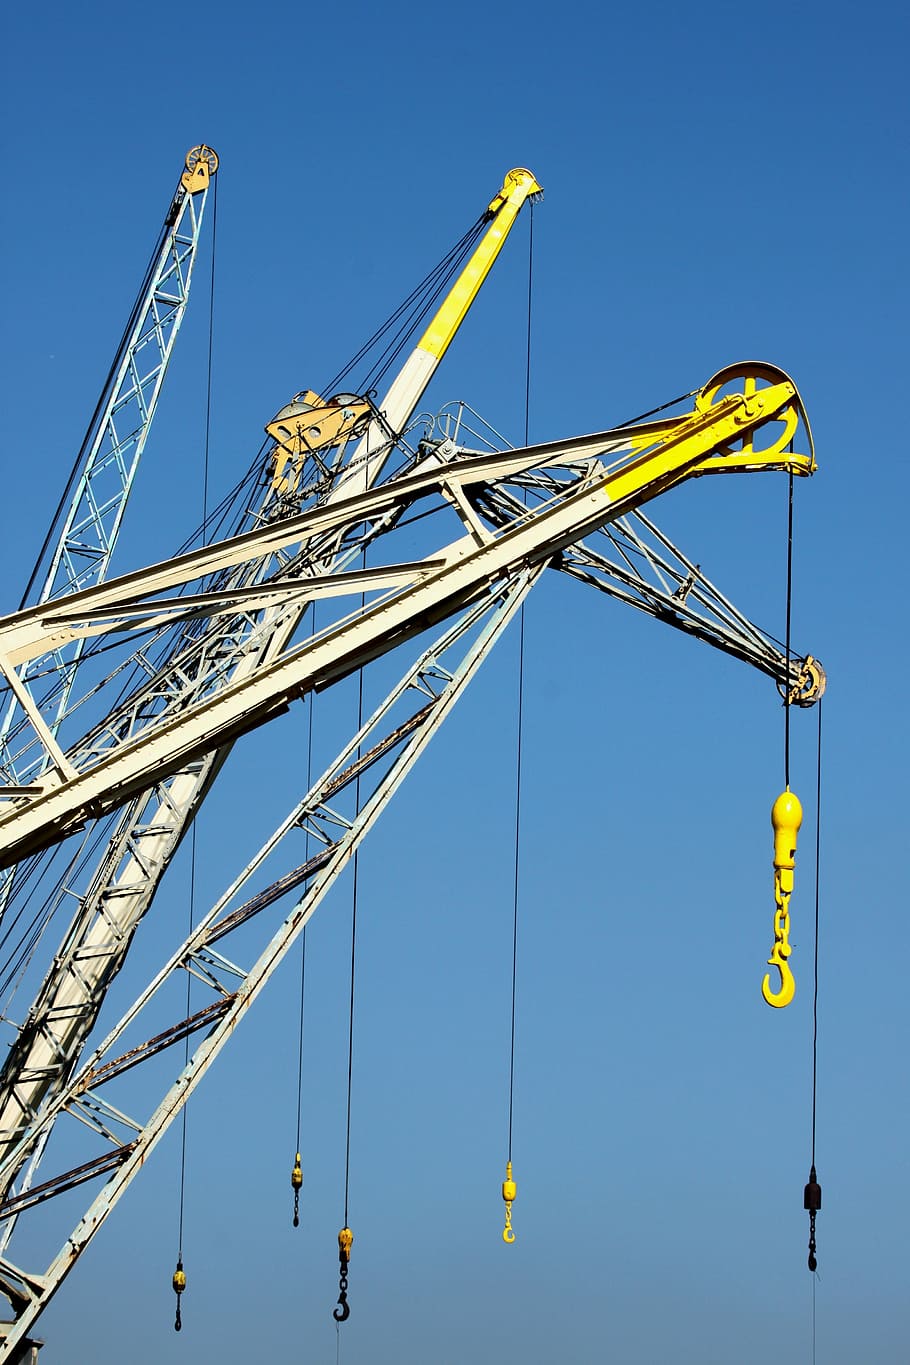 antwerp, taps, port, belgium, equipment, blue, industry, crane - Construction Machinery, sky, steel